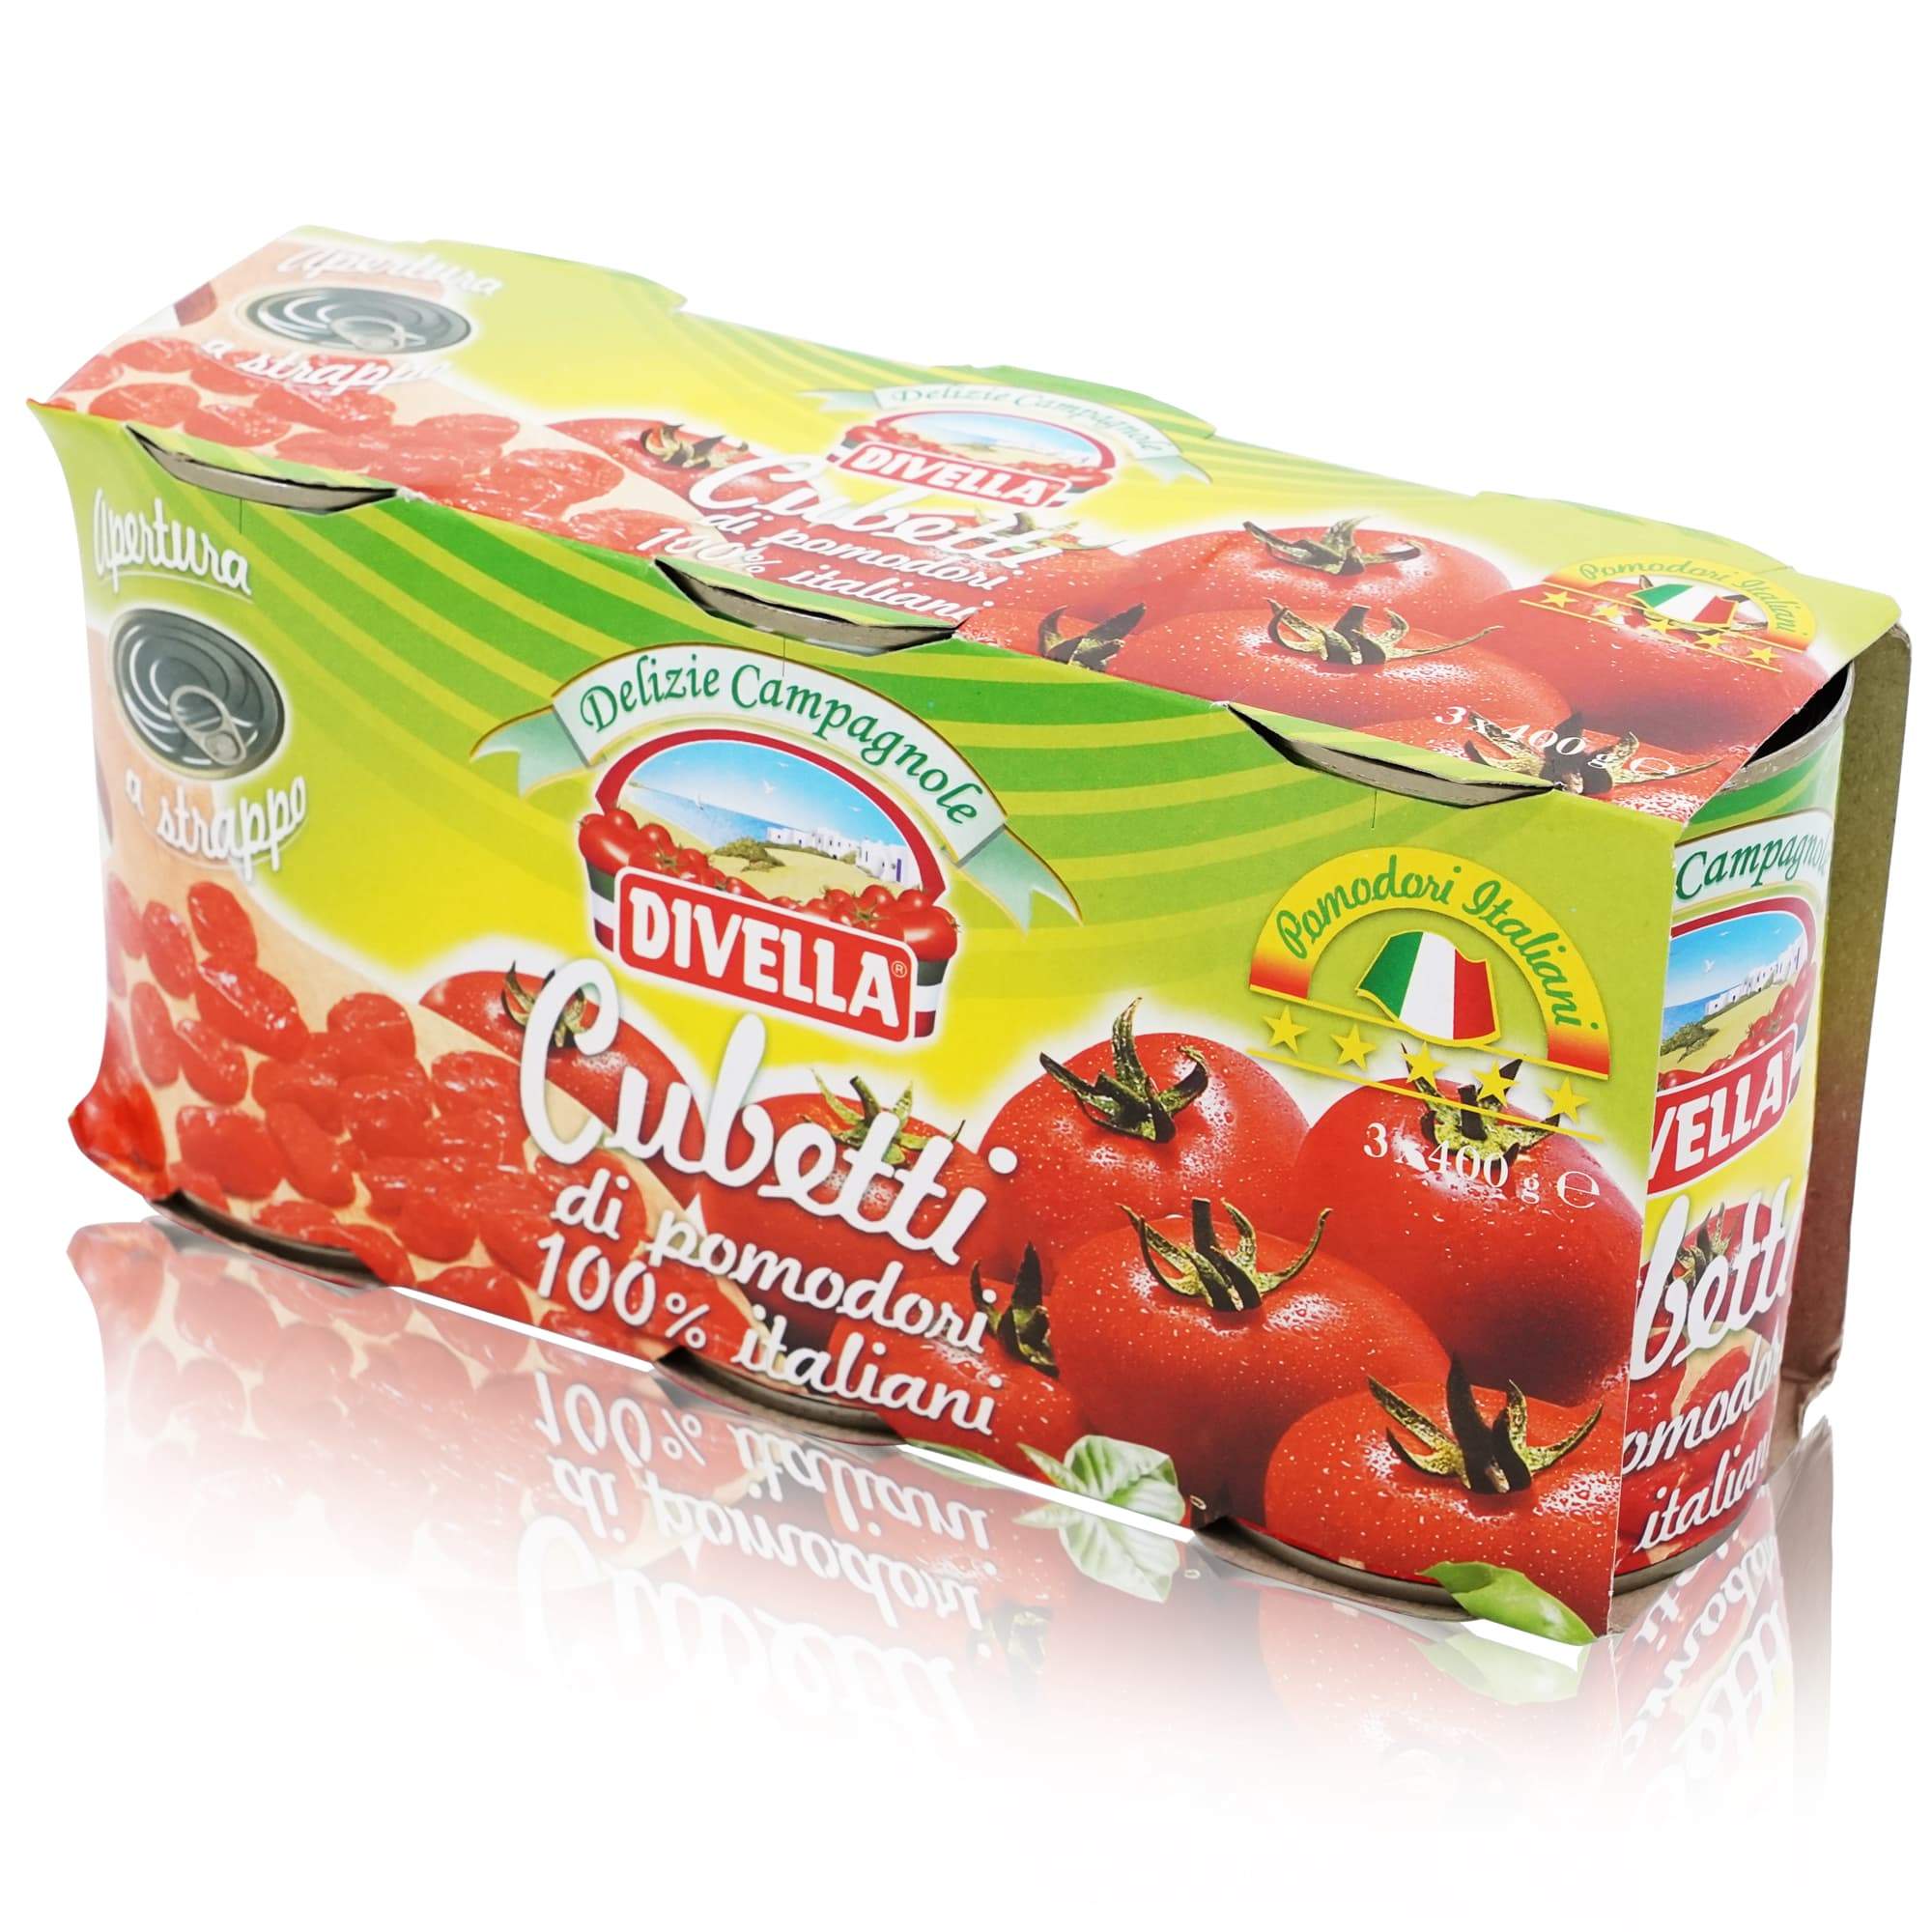 Divella Pomodori Cubetti - 1,2kg - italienisch - einkaufen.de